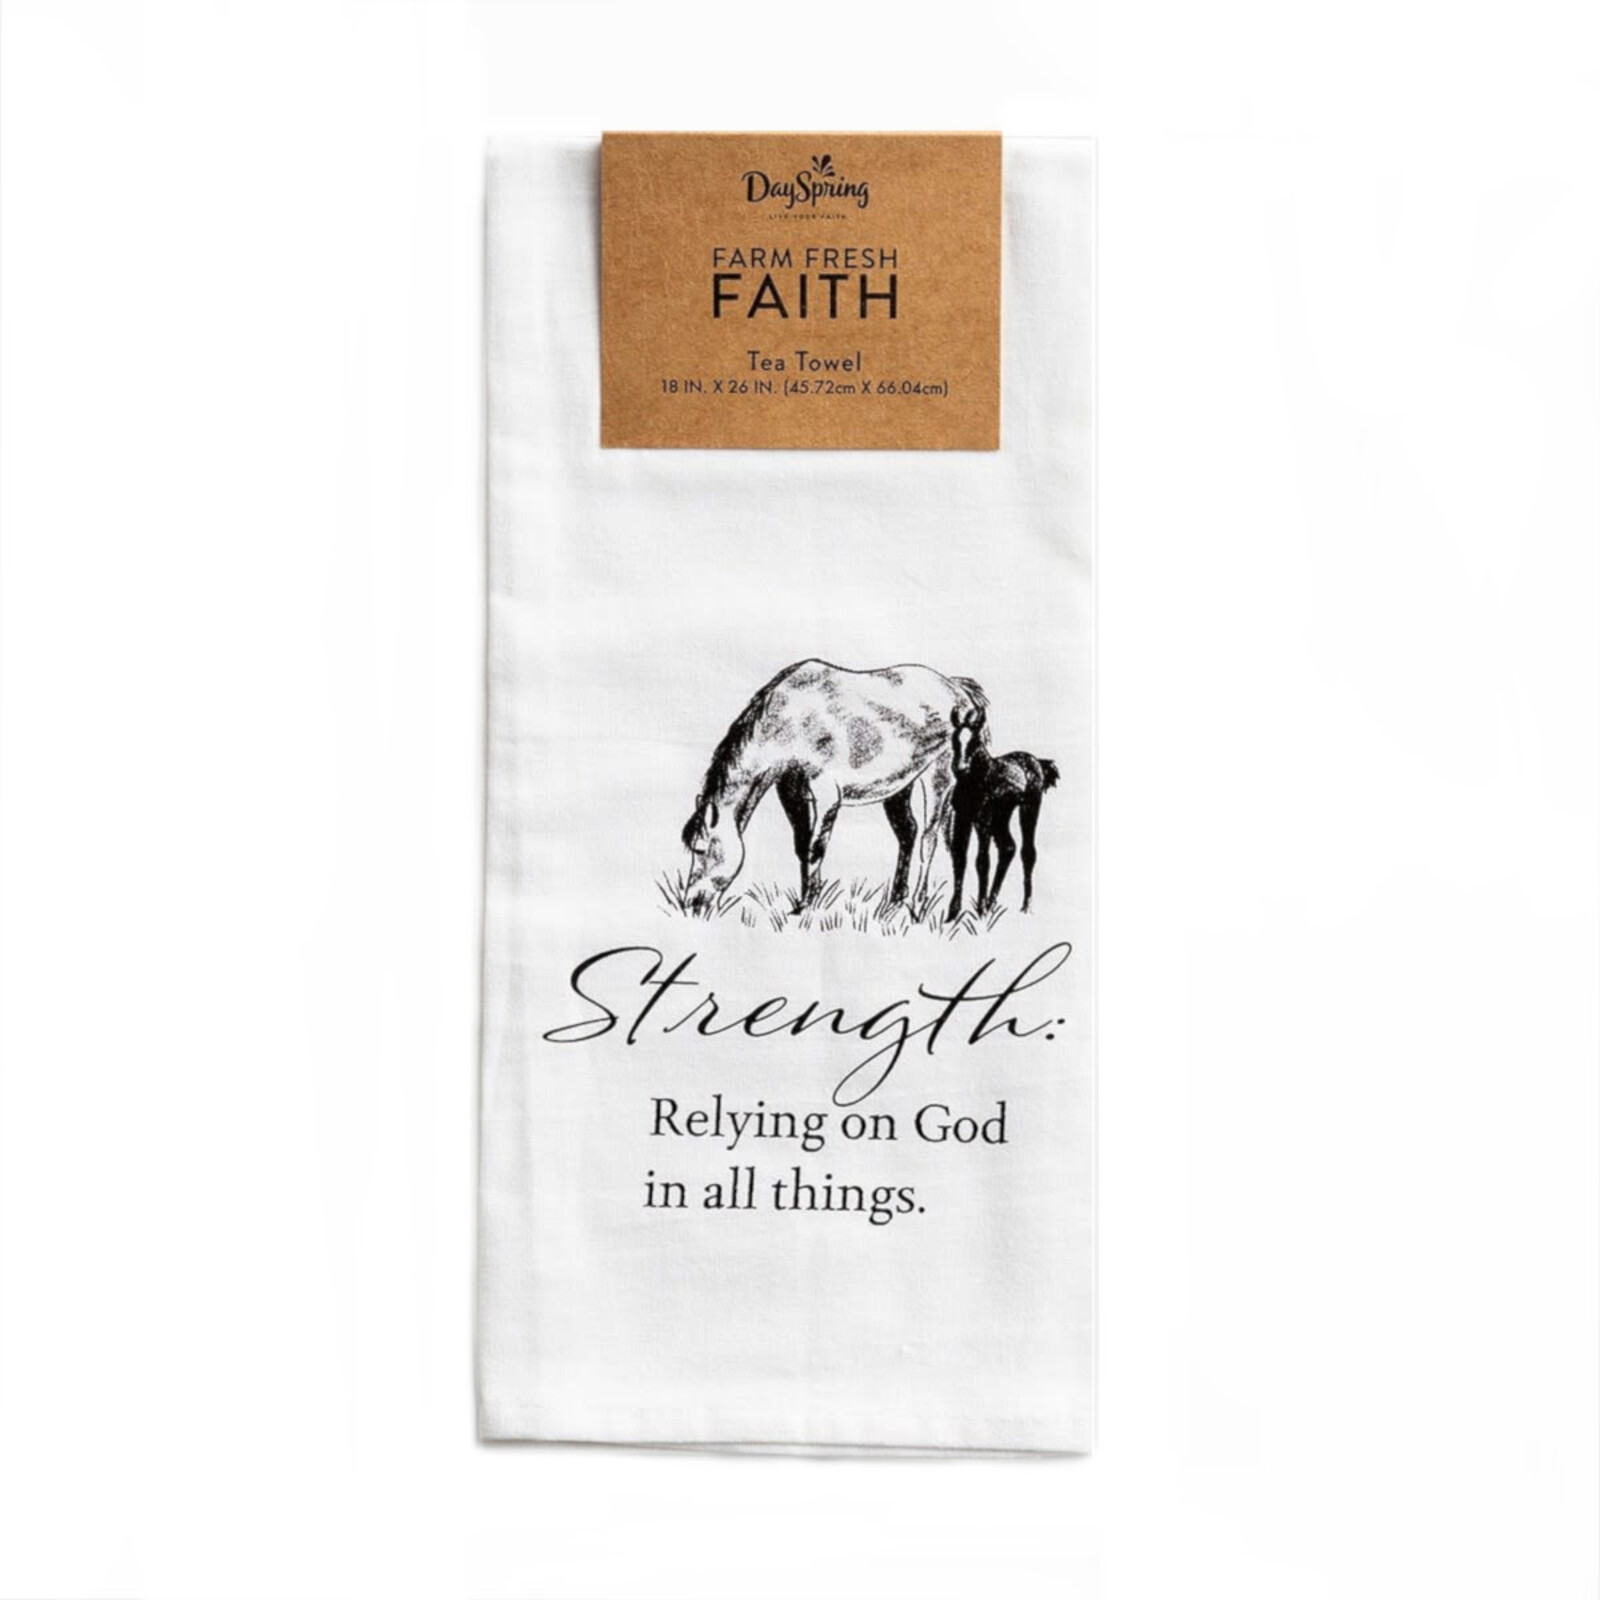 Dayspring Farm Fresh Faith Tea Towel-Strength  Horse   J1551 loading=